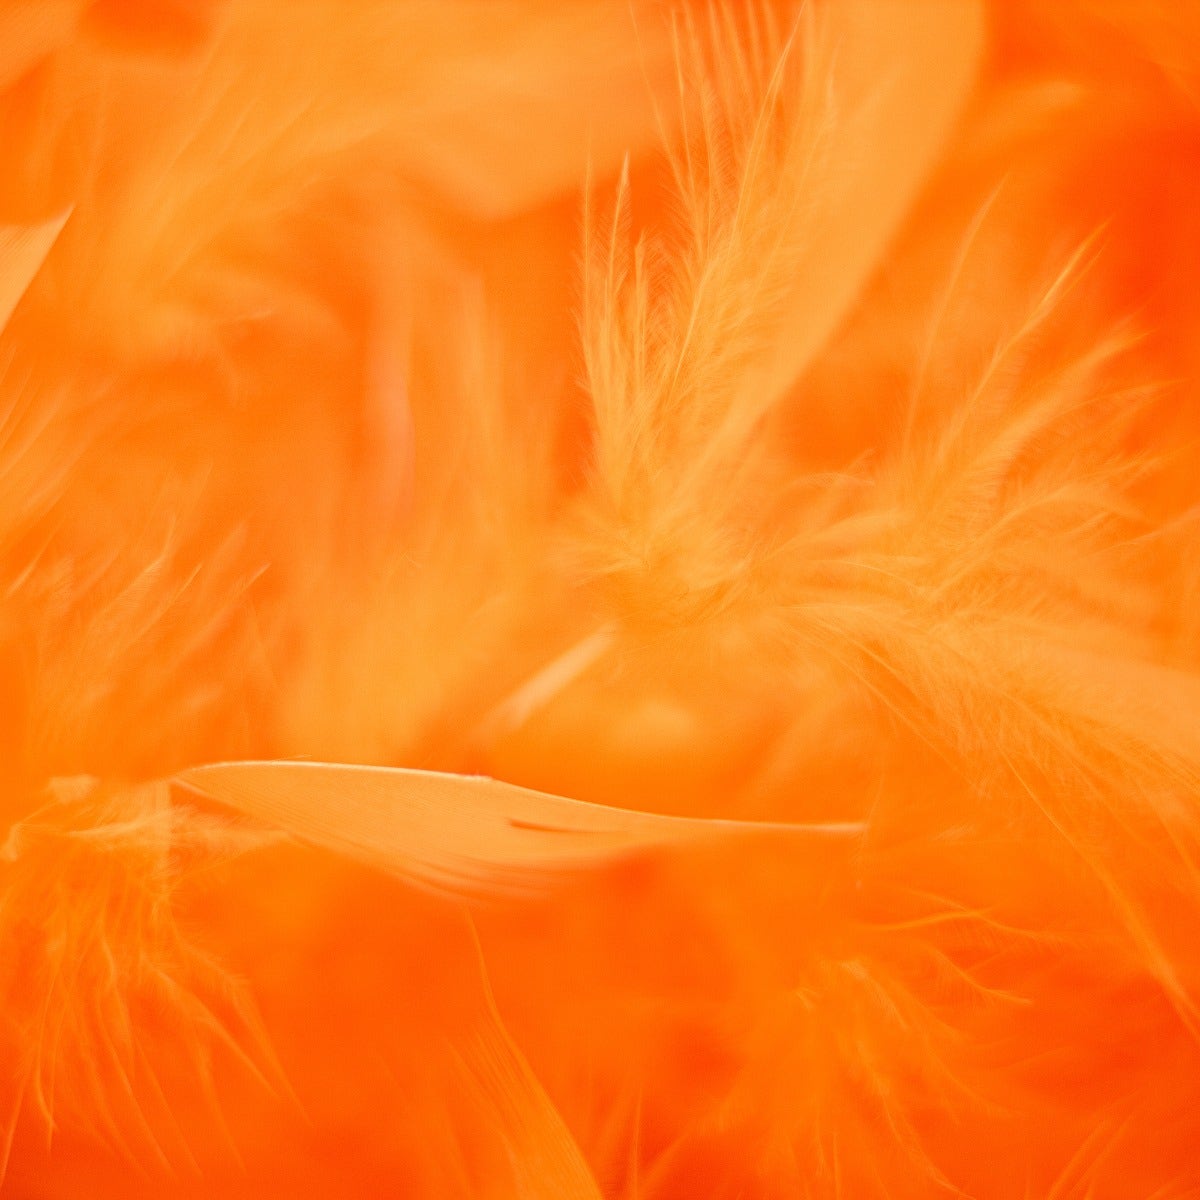 Chandelle Feather Boa - Medium Weight - Orange